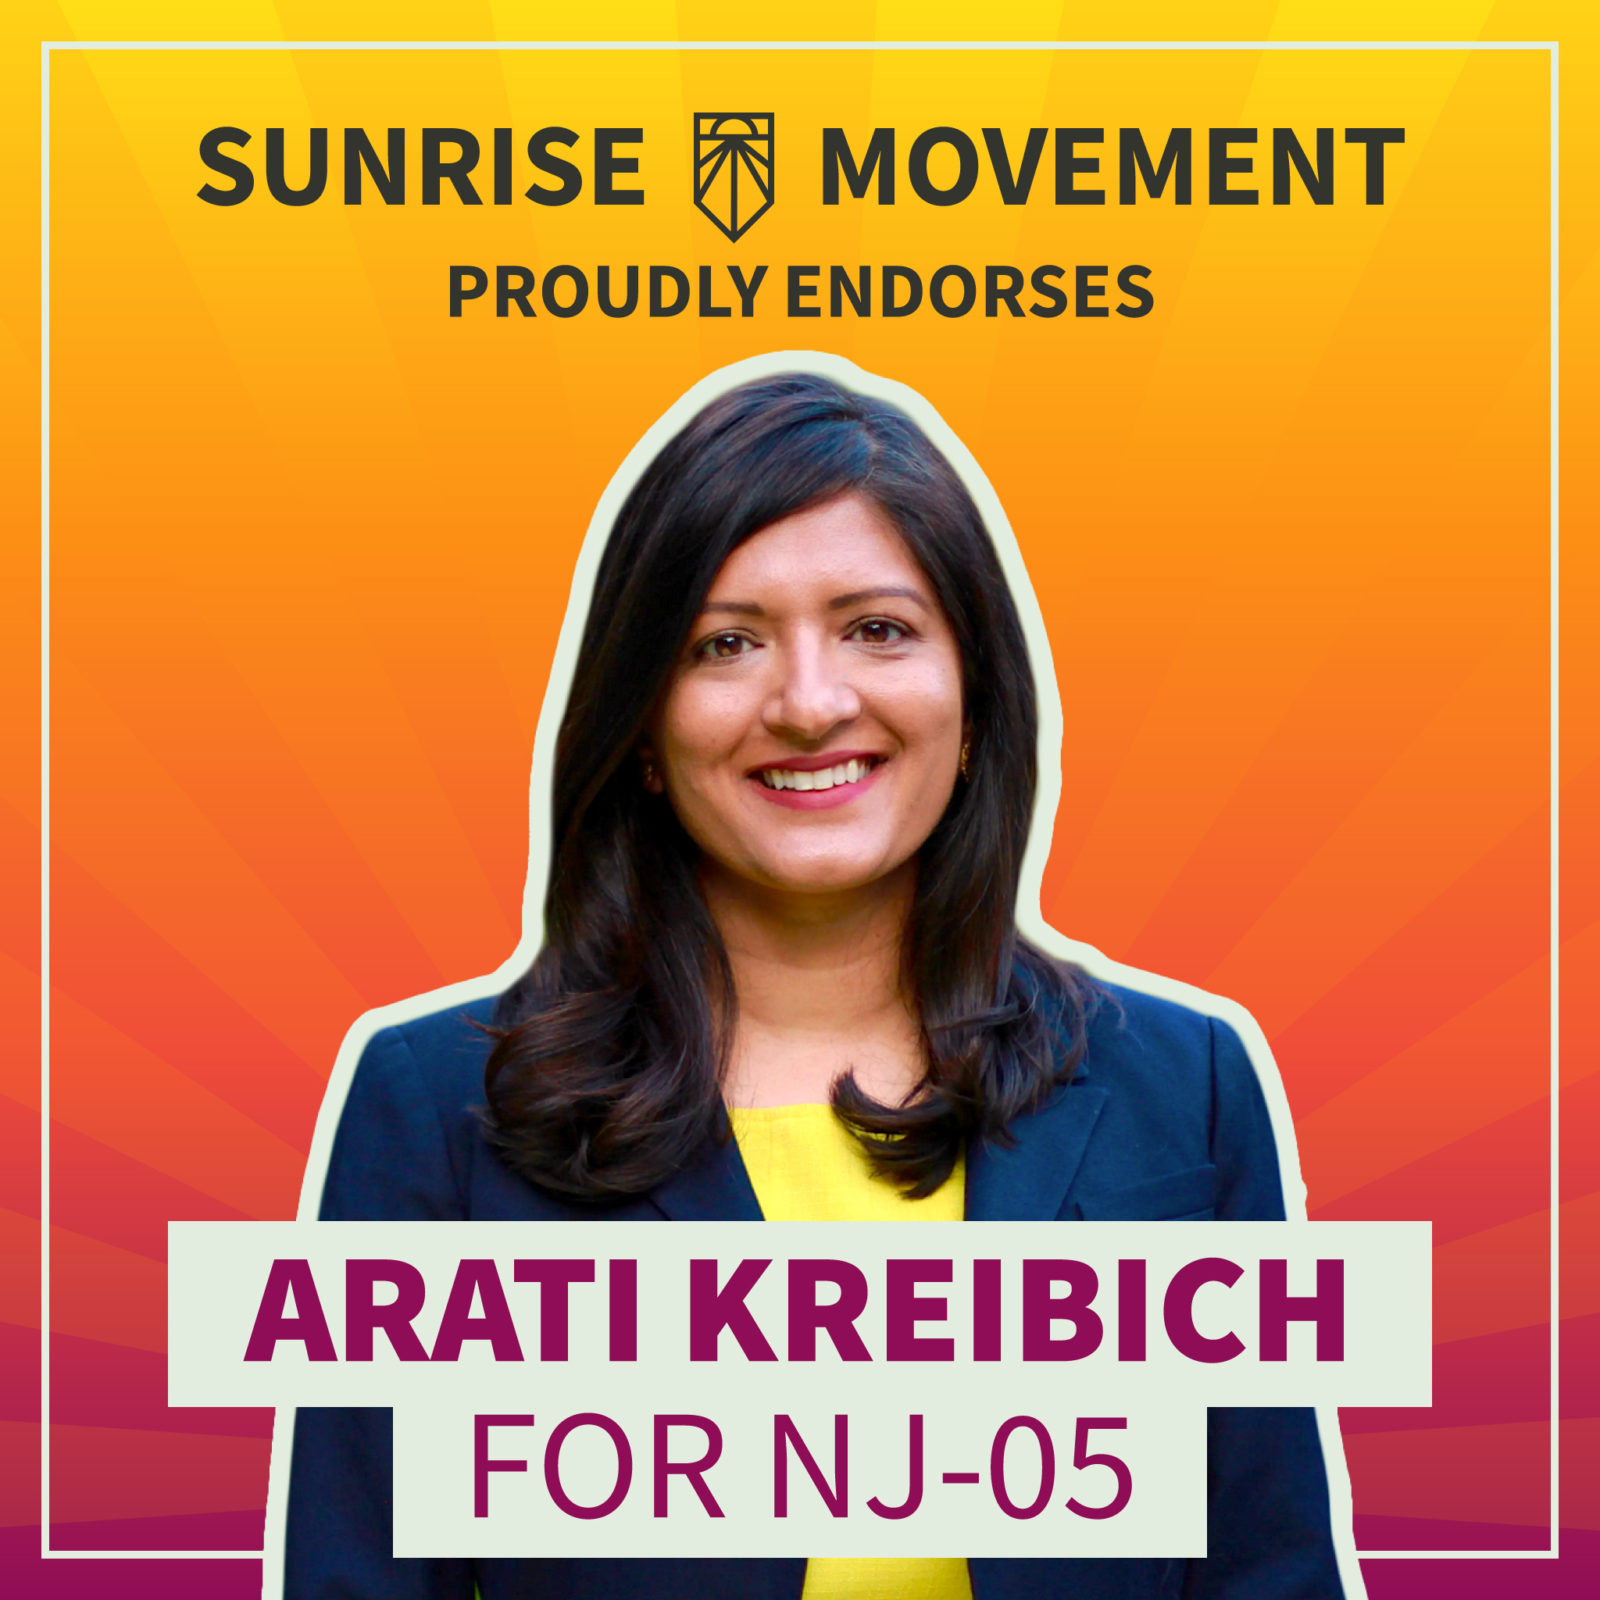 Una foto de Arati Kreibich con texto: Sunrise Movement respalda con orgullo a Arati Kreibich para NJ-05